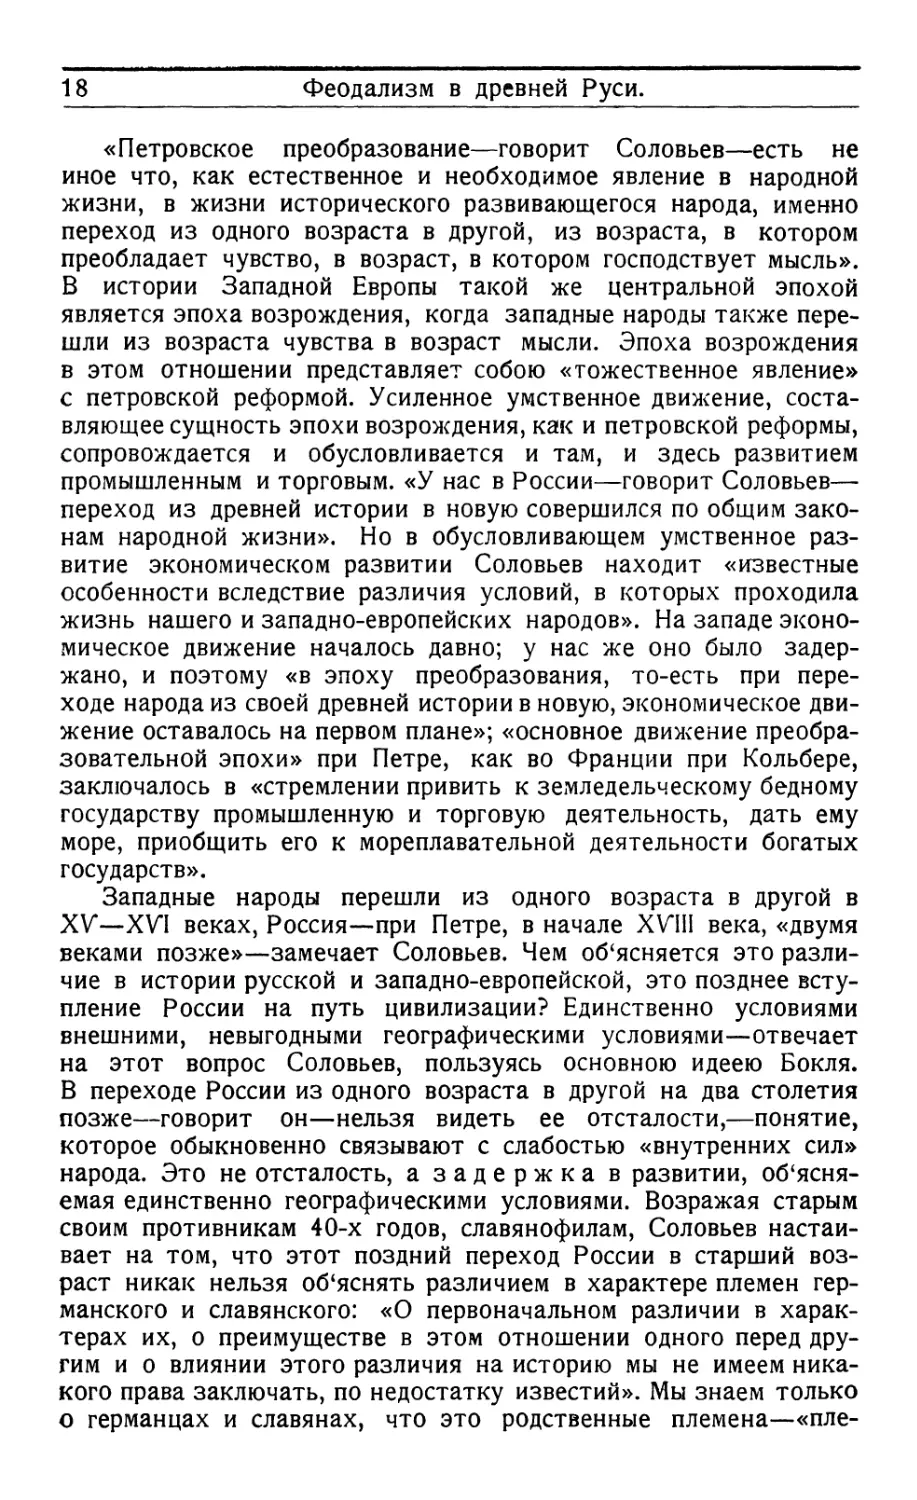 § 5. Основные положения новой истории Соловьева.